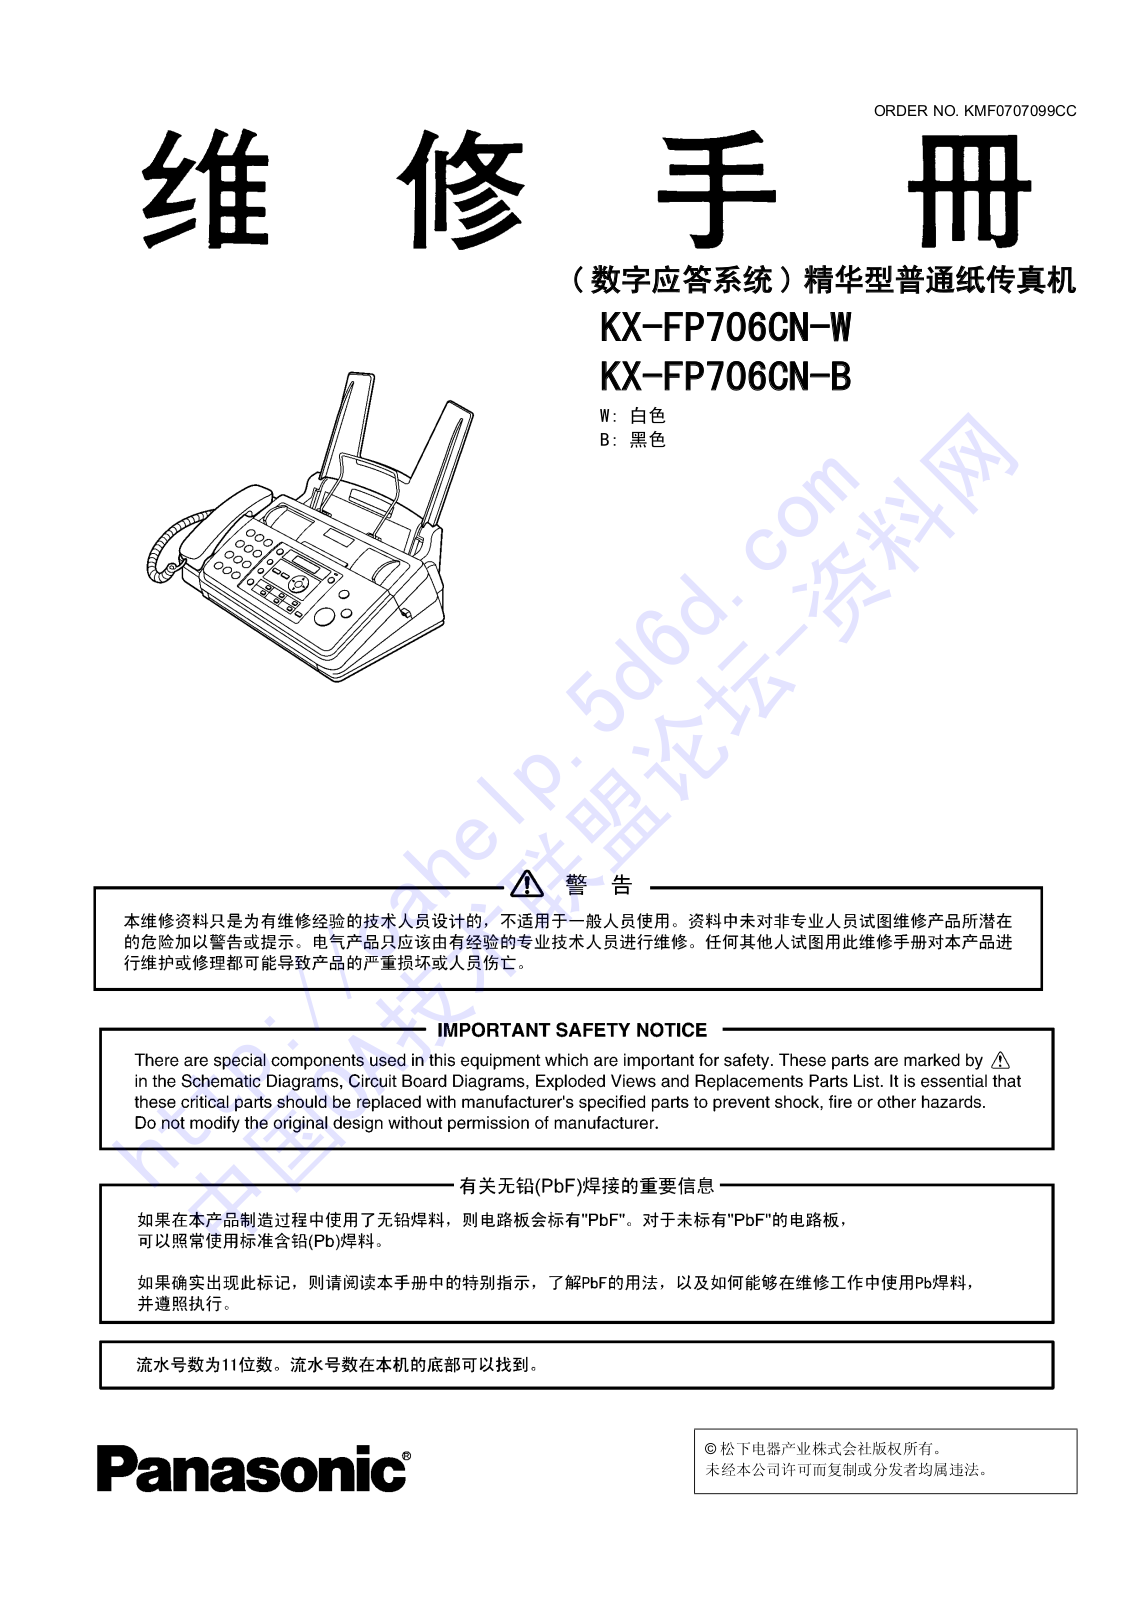 Panasonic KX-FP706CN-W, KX-FP706CN-B repair manual